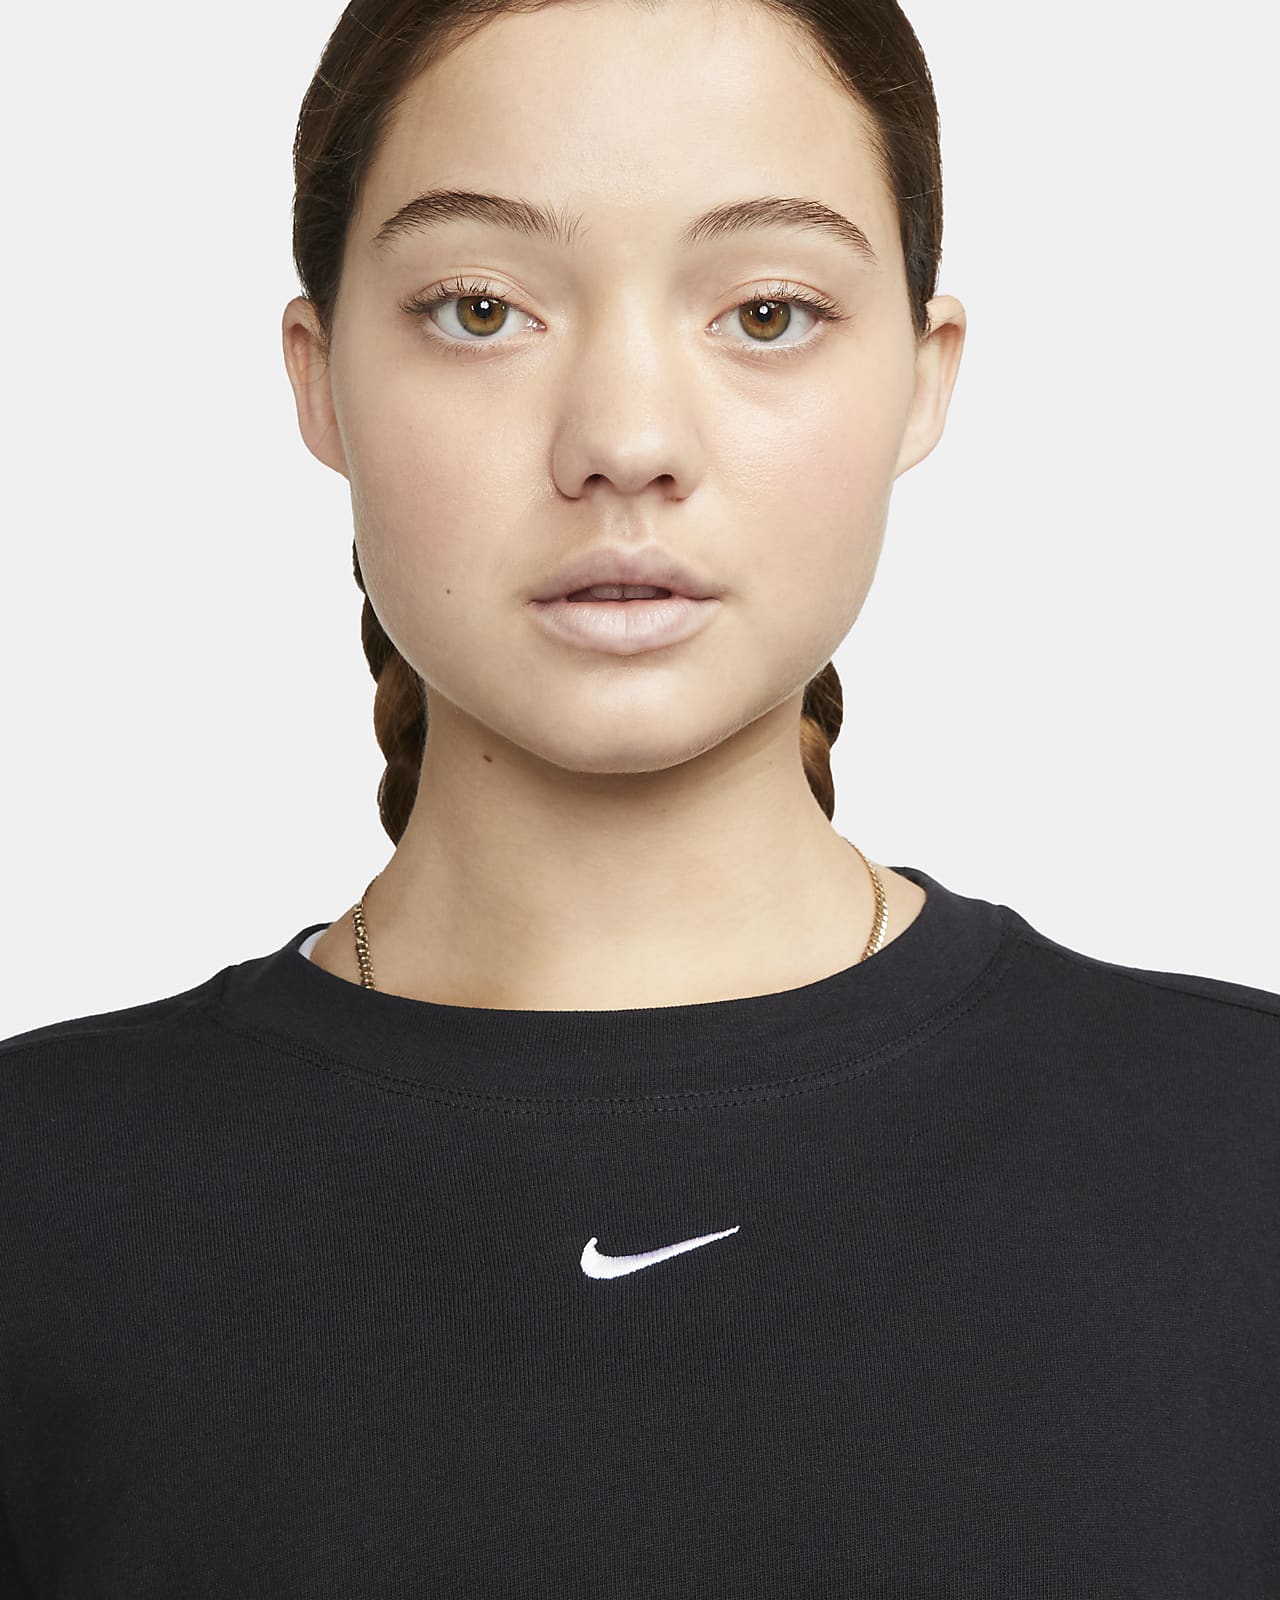 Nike Sportswear Essential Women's T-Shirt.